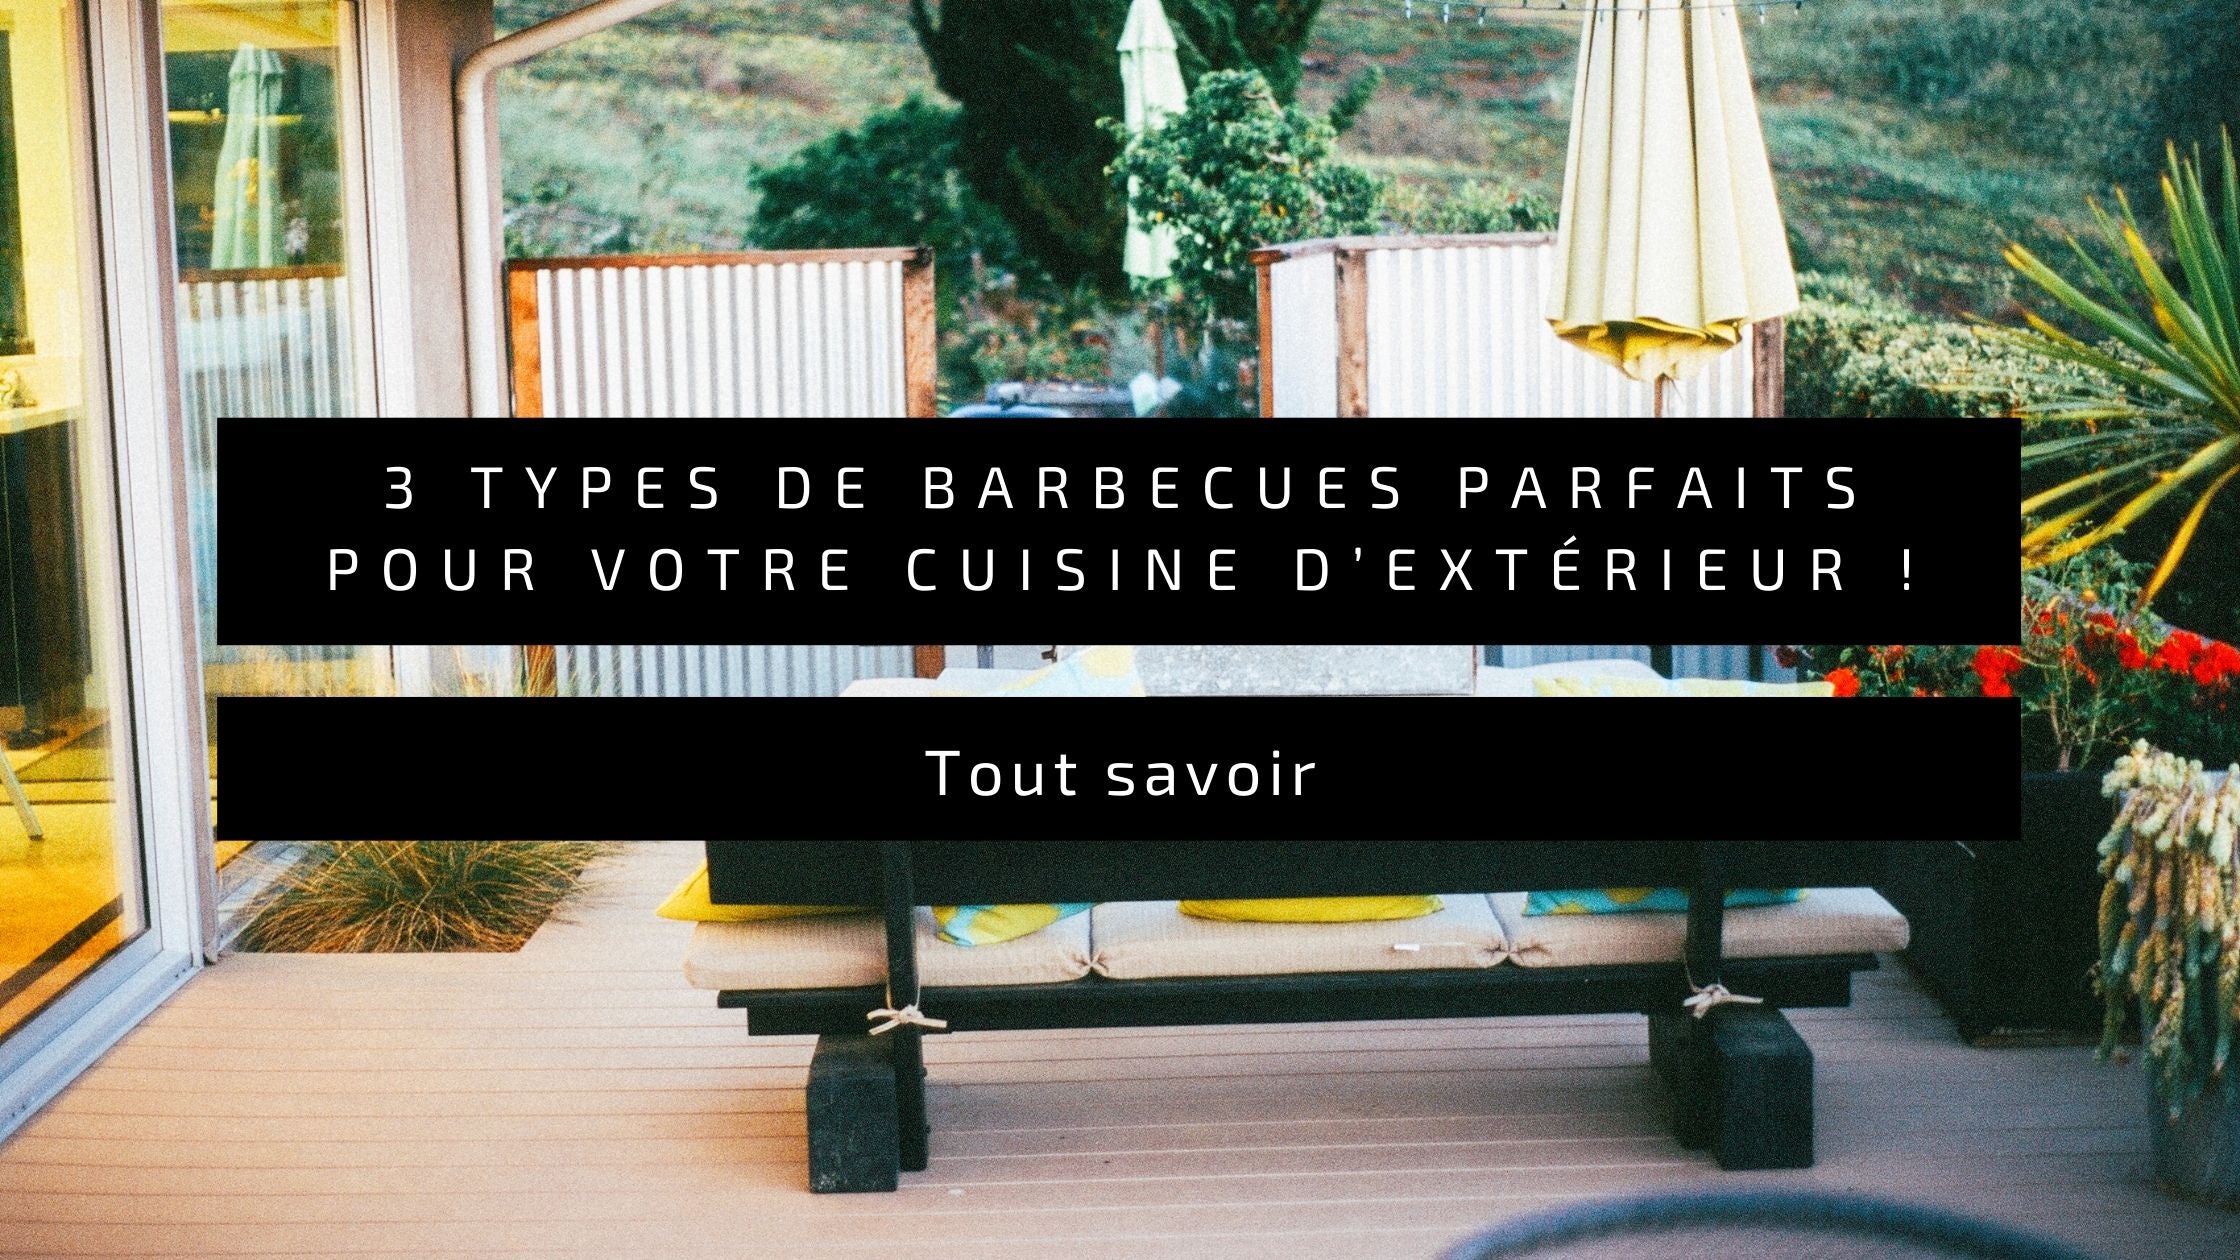 3 types de barbecues parfaits pour votre cuisine d’extérieur !